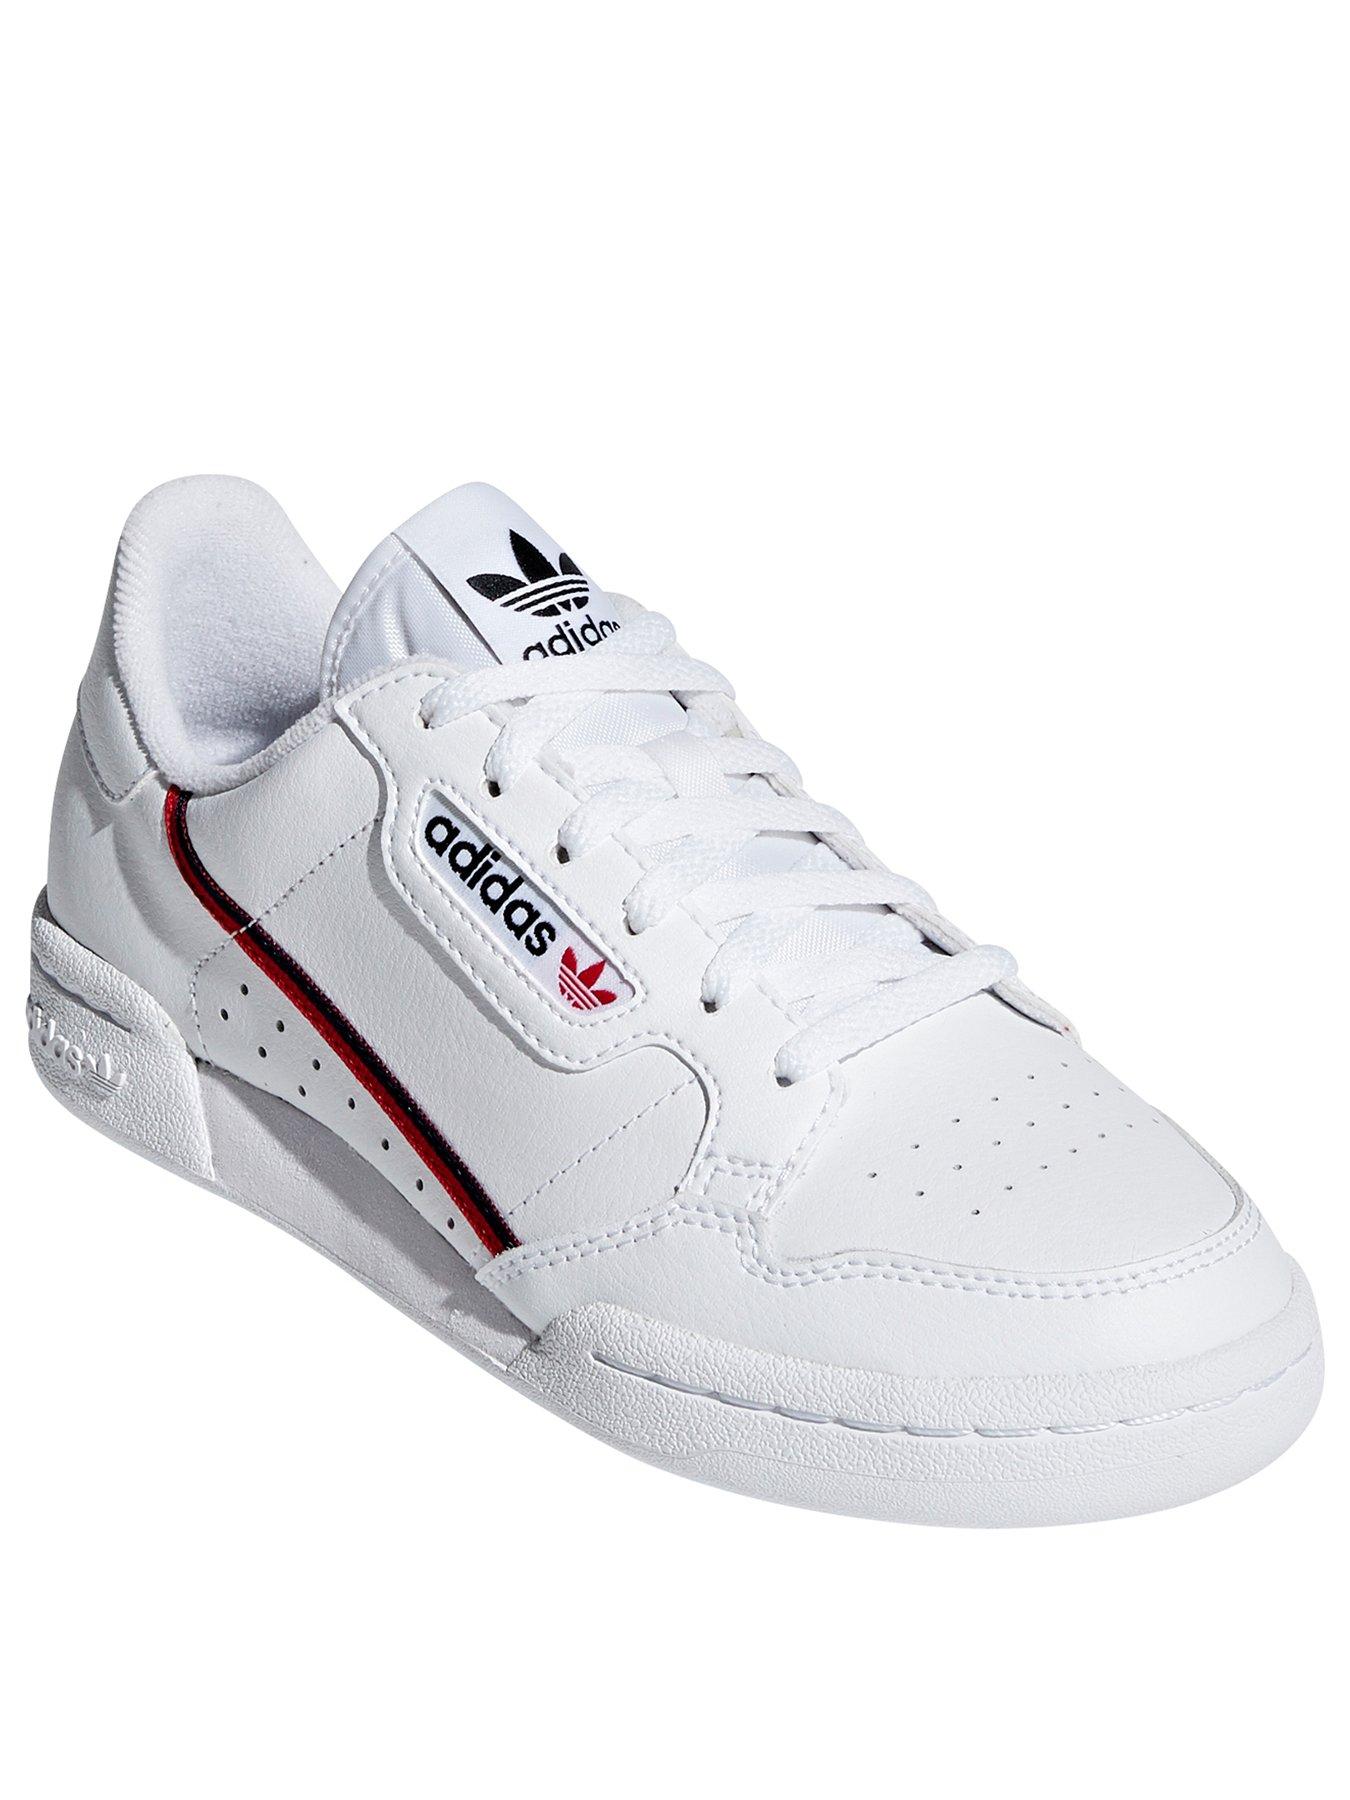 adidas Originals Unisex Junior Continental 80 Trainers - White | very.co.uk